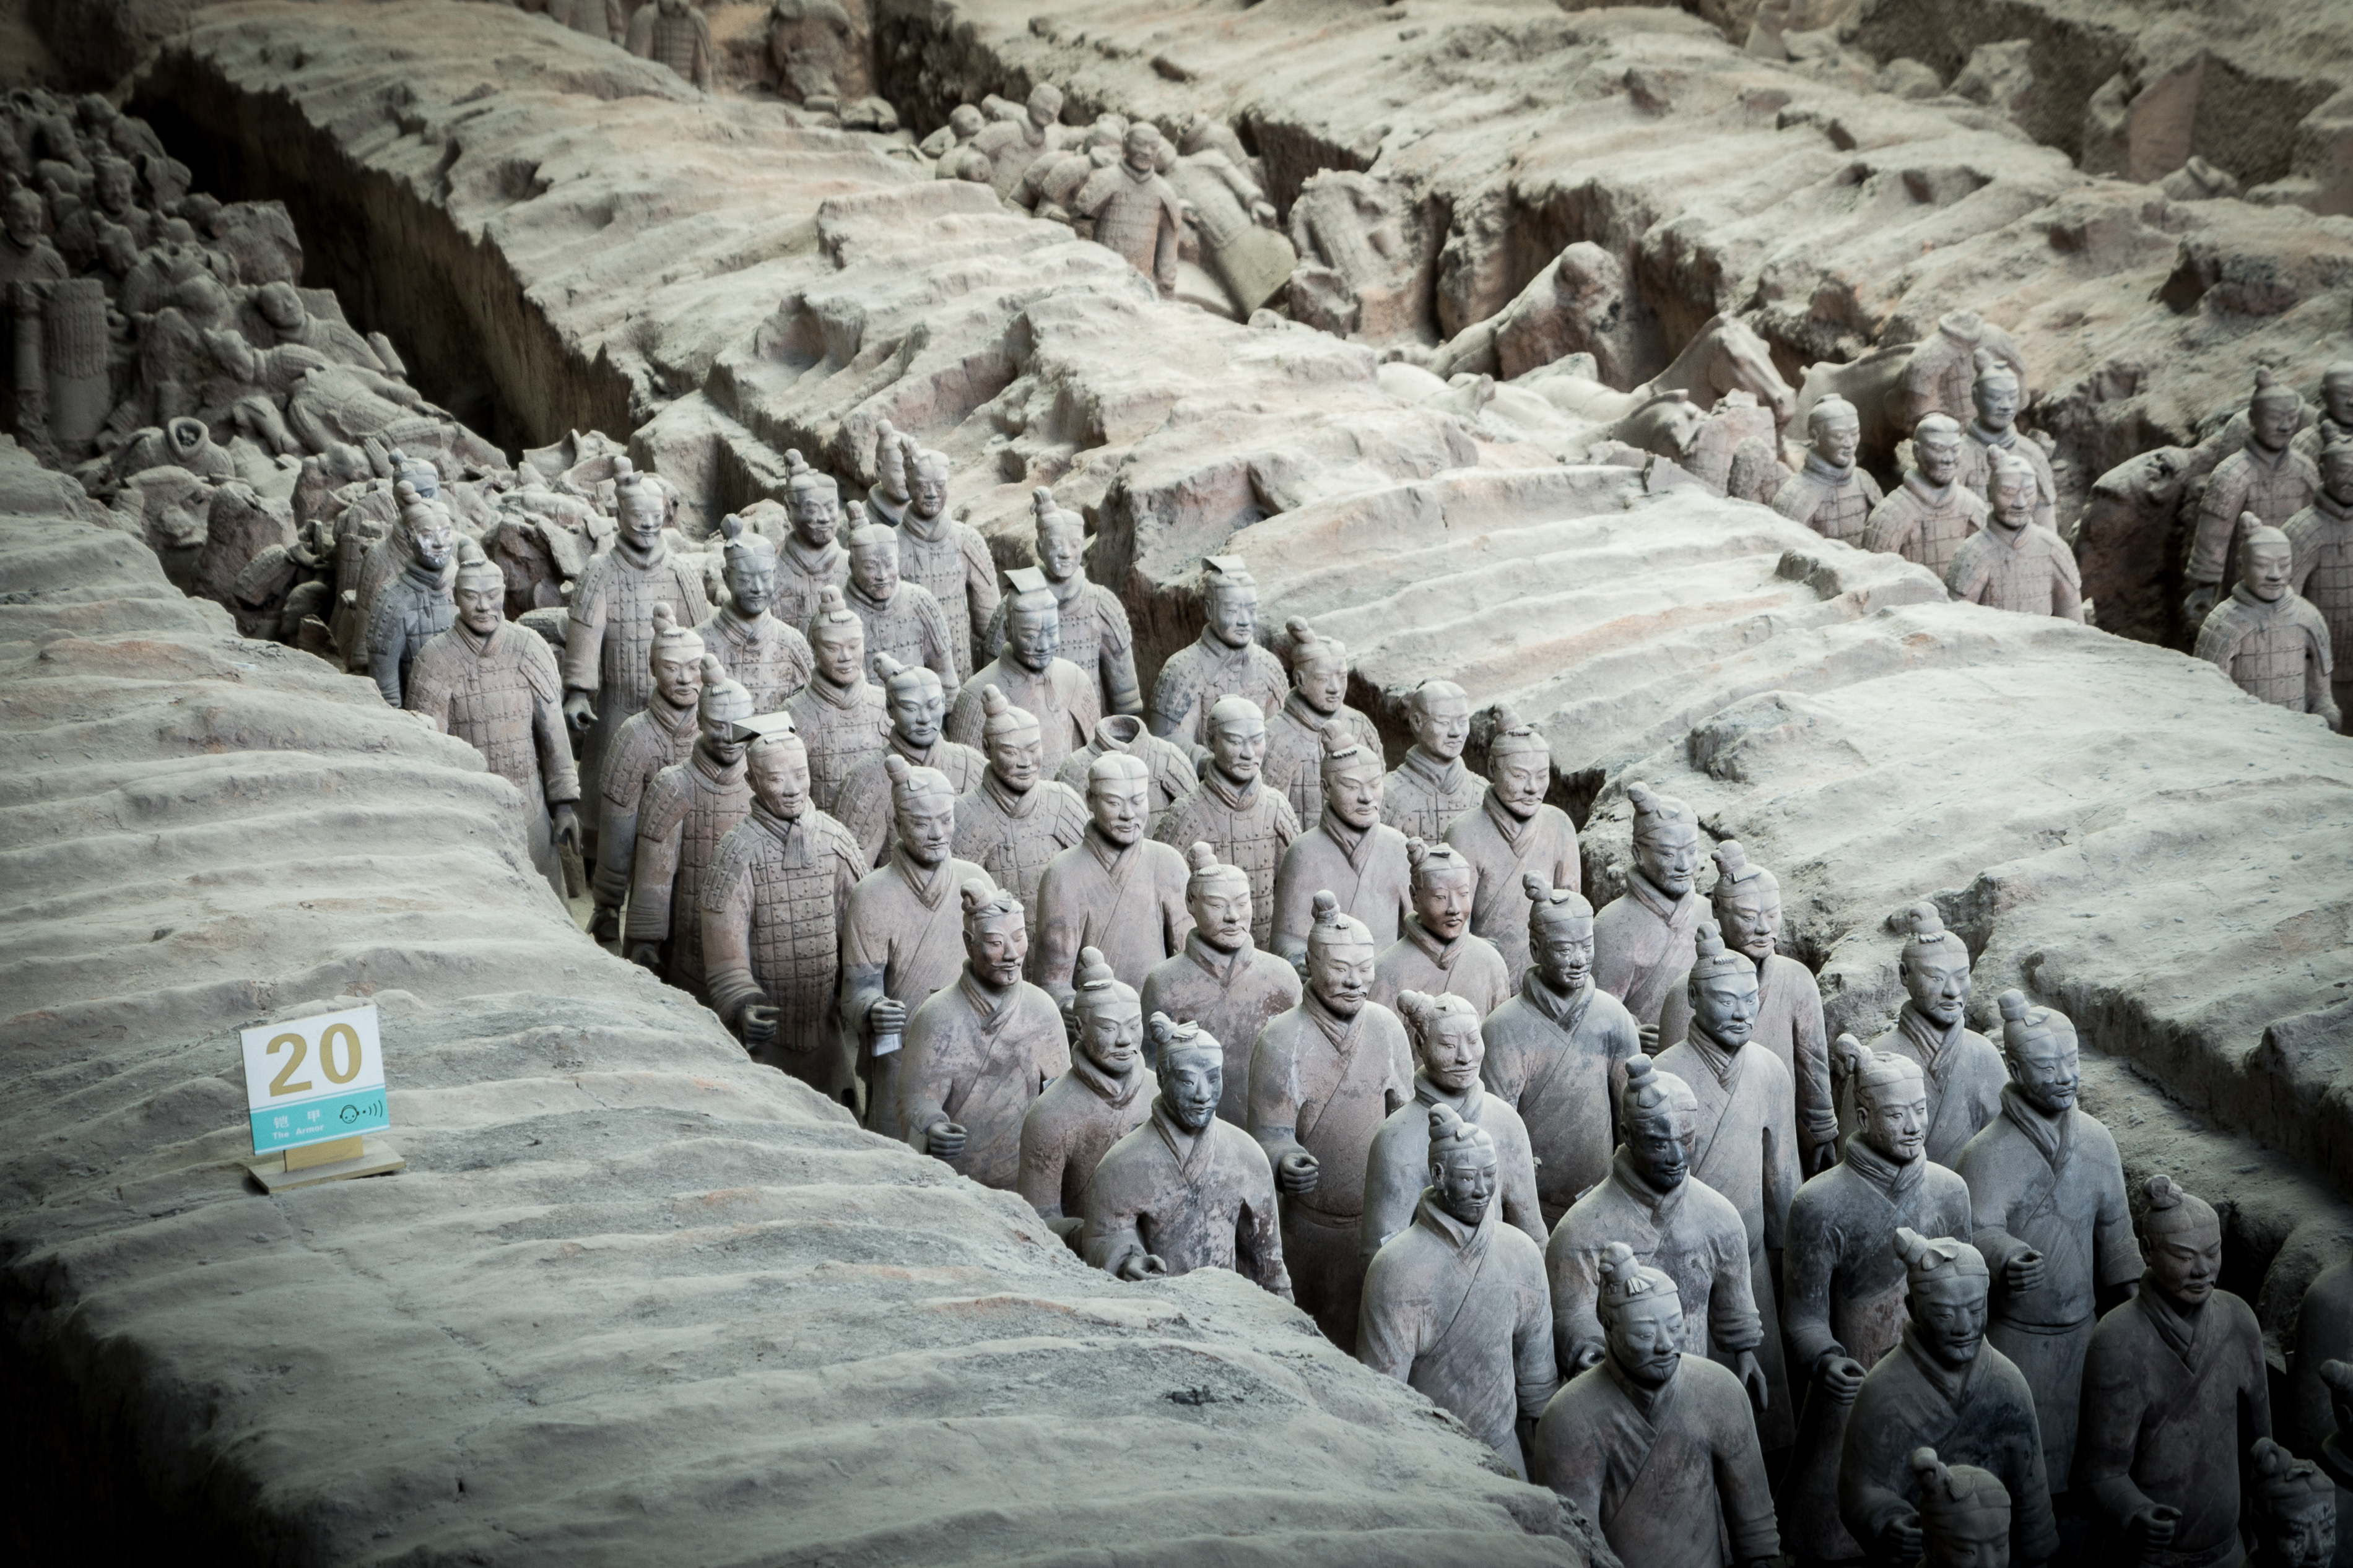 Terracotta Warriors in Xi'an, amazing photos